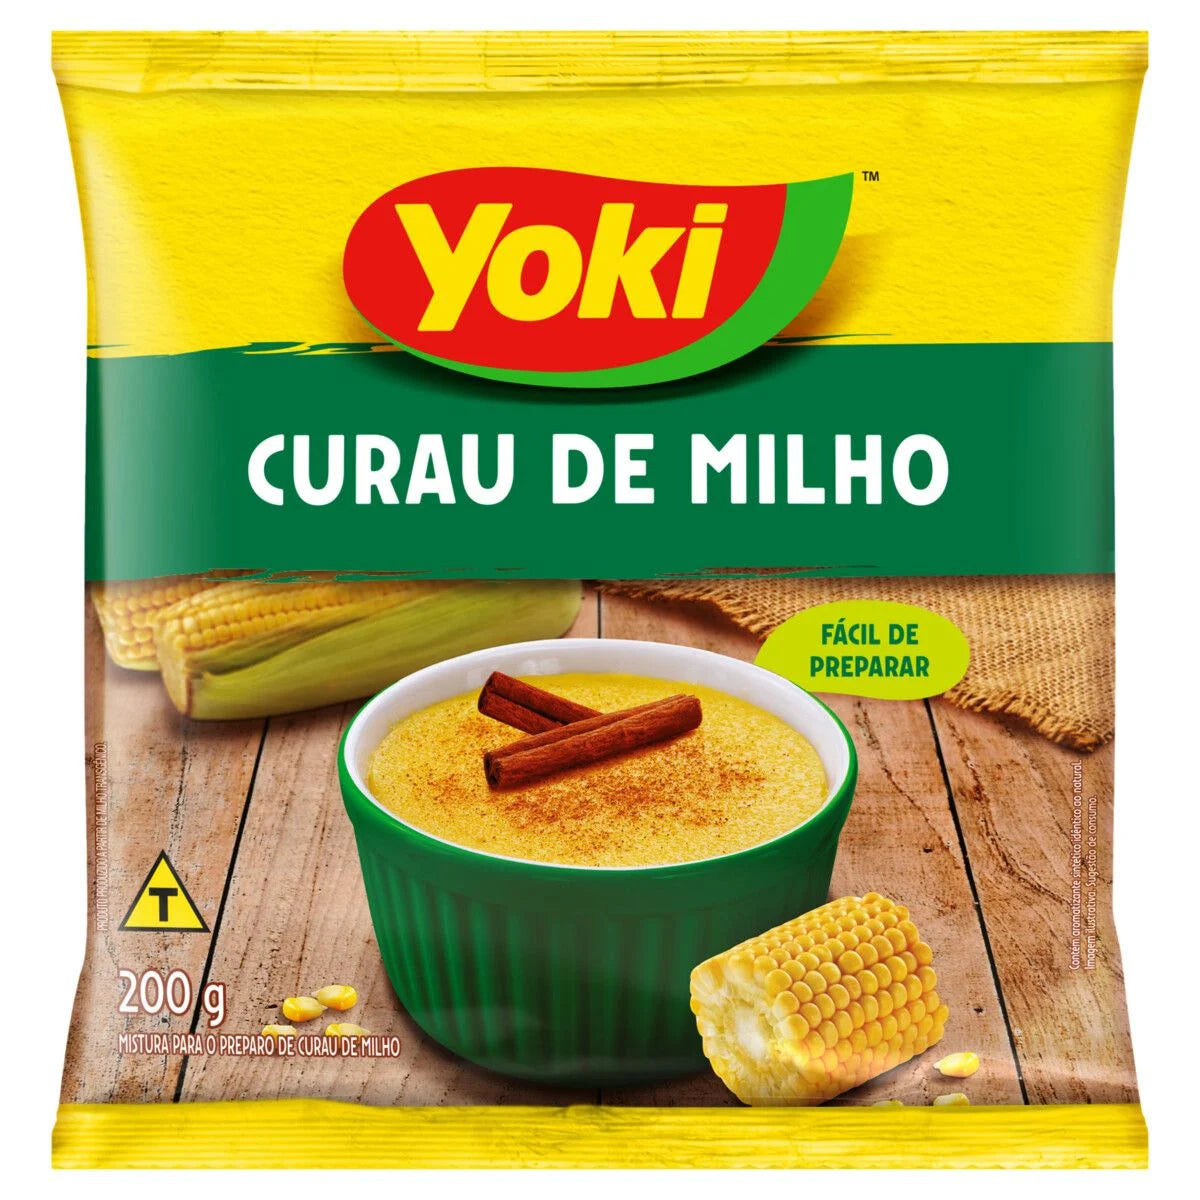 Yoki Corn Curau 200g - close to expire